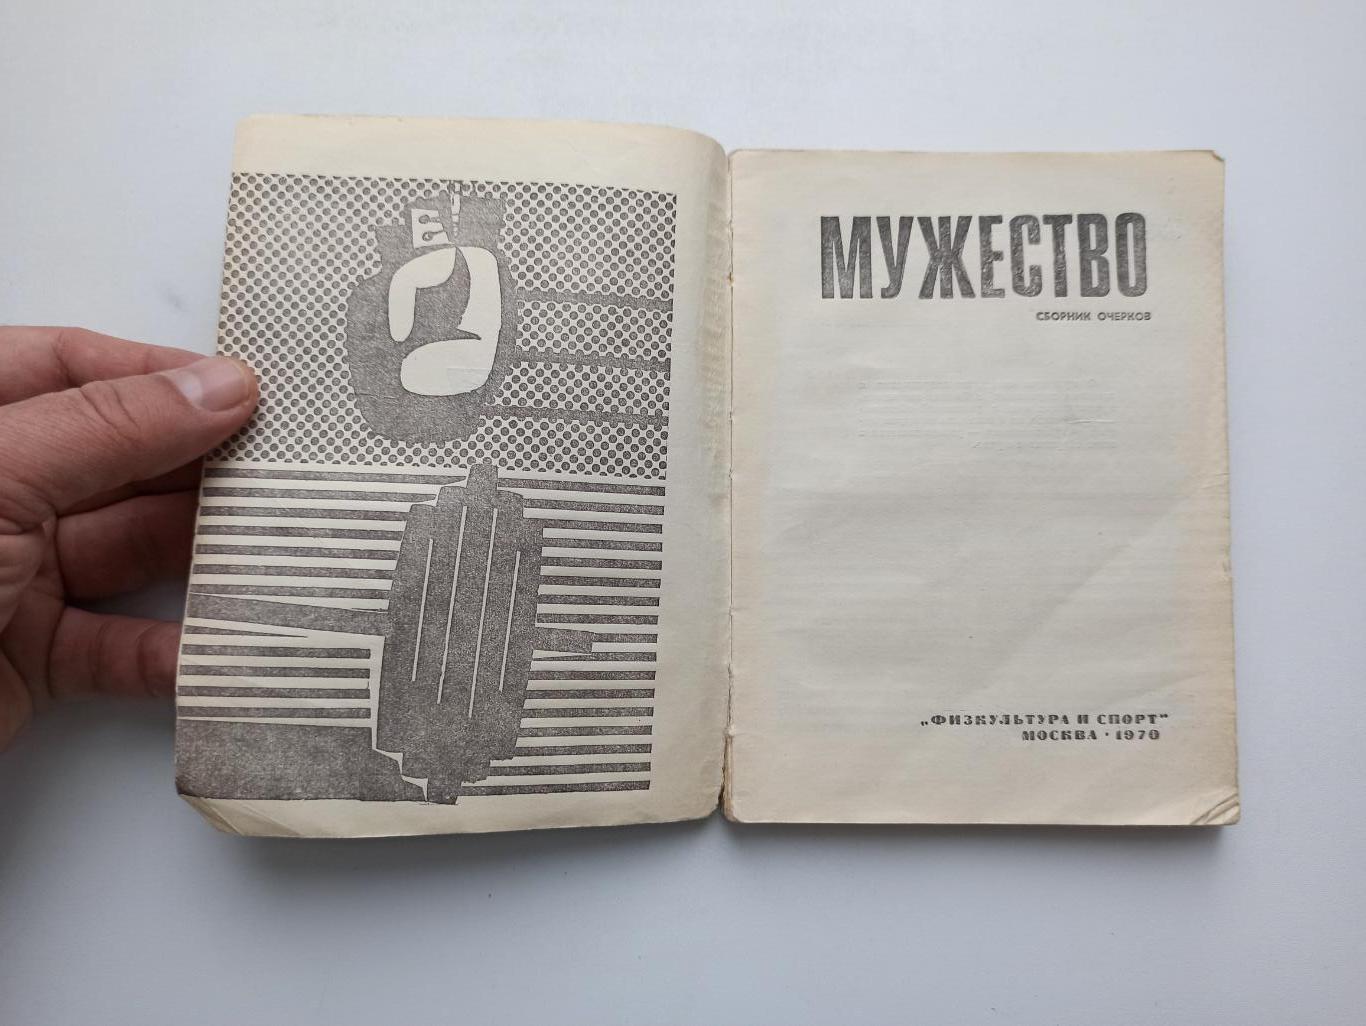 Спорт в СССР,Мужество, сборник очерков, 1970г., редкая книга 2